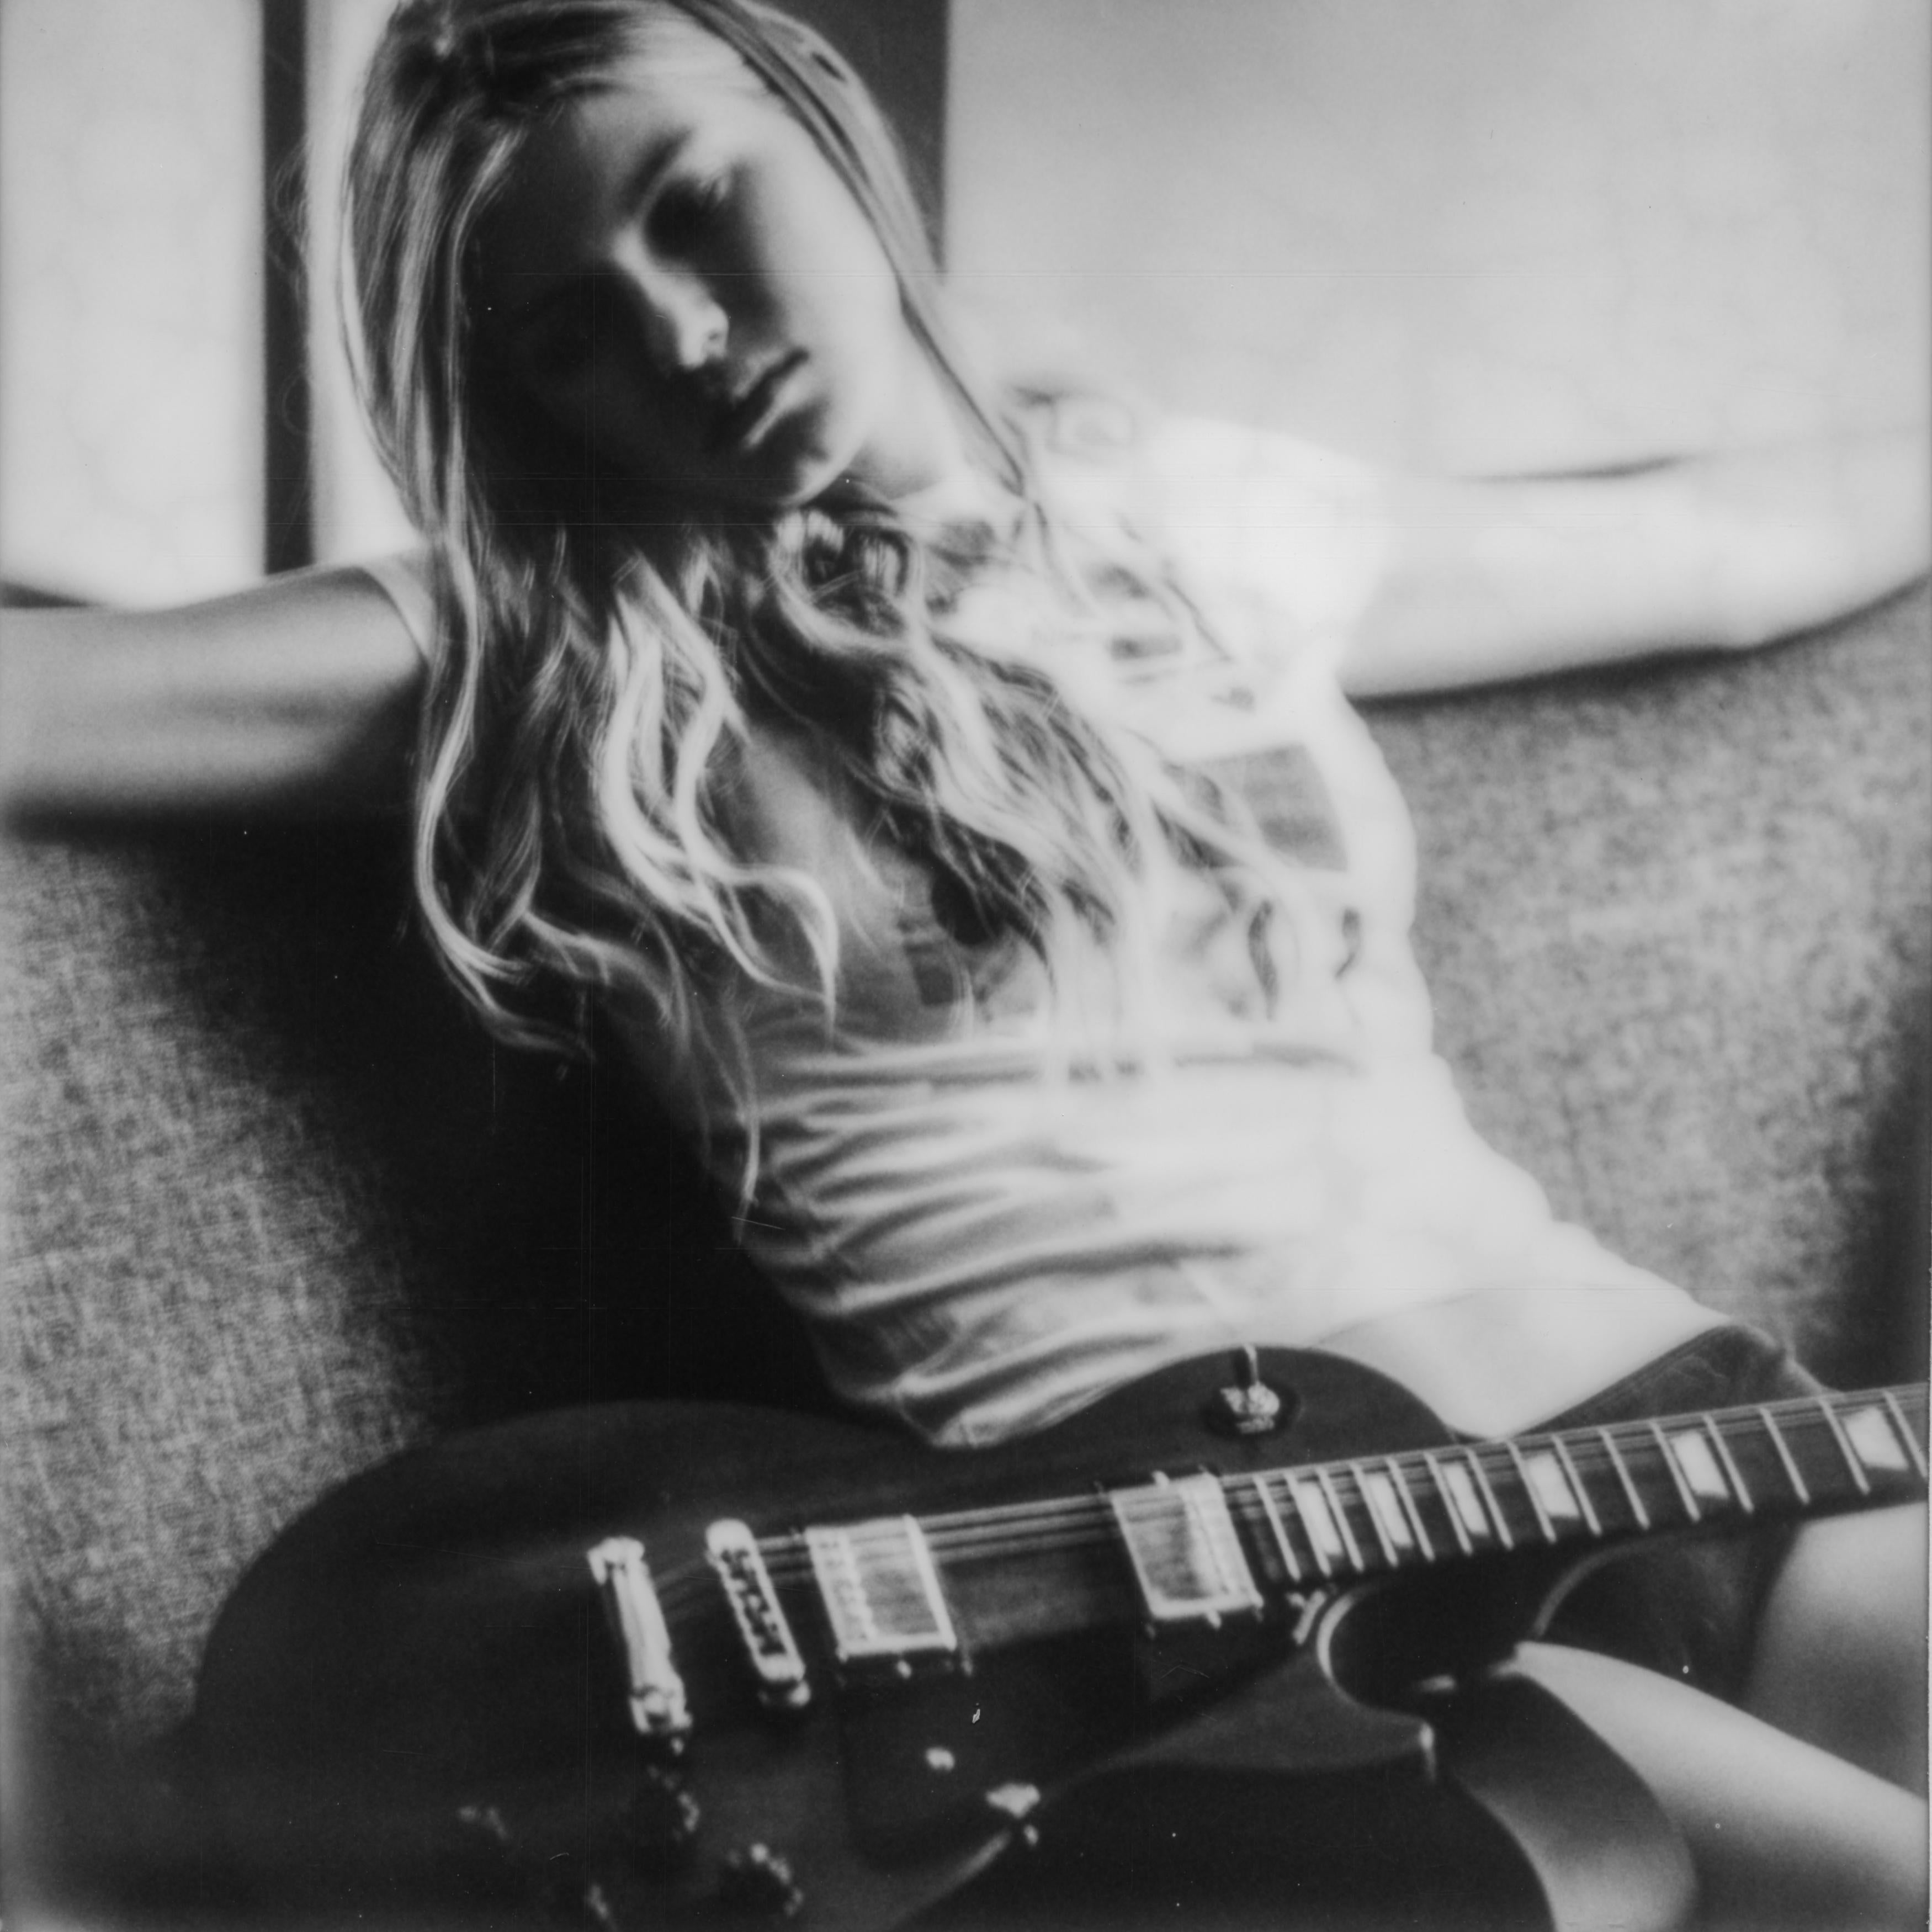 Gitarre-Girl – Polaroid, Schwarz und Weiß, Frauen, 21. Jahrhundert, Akt